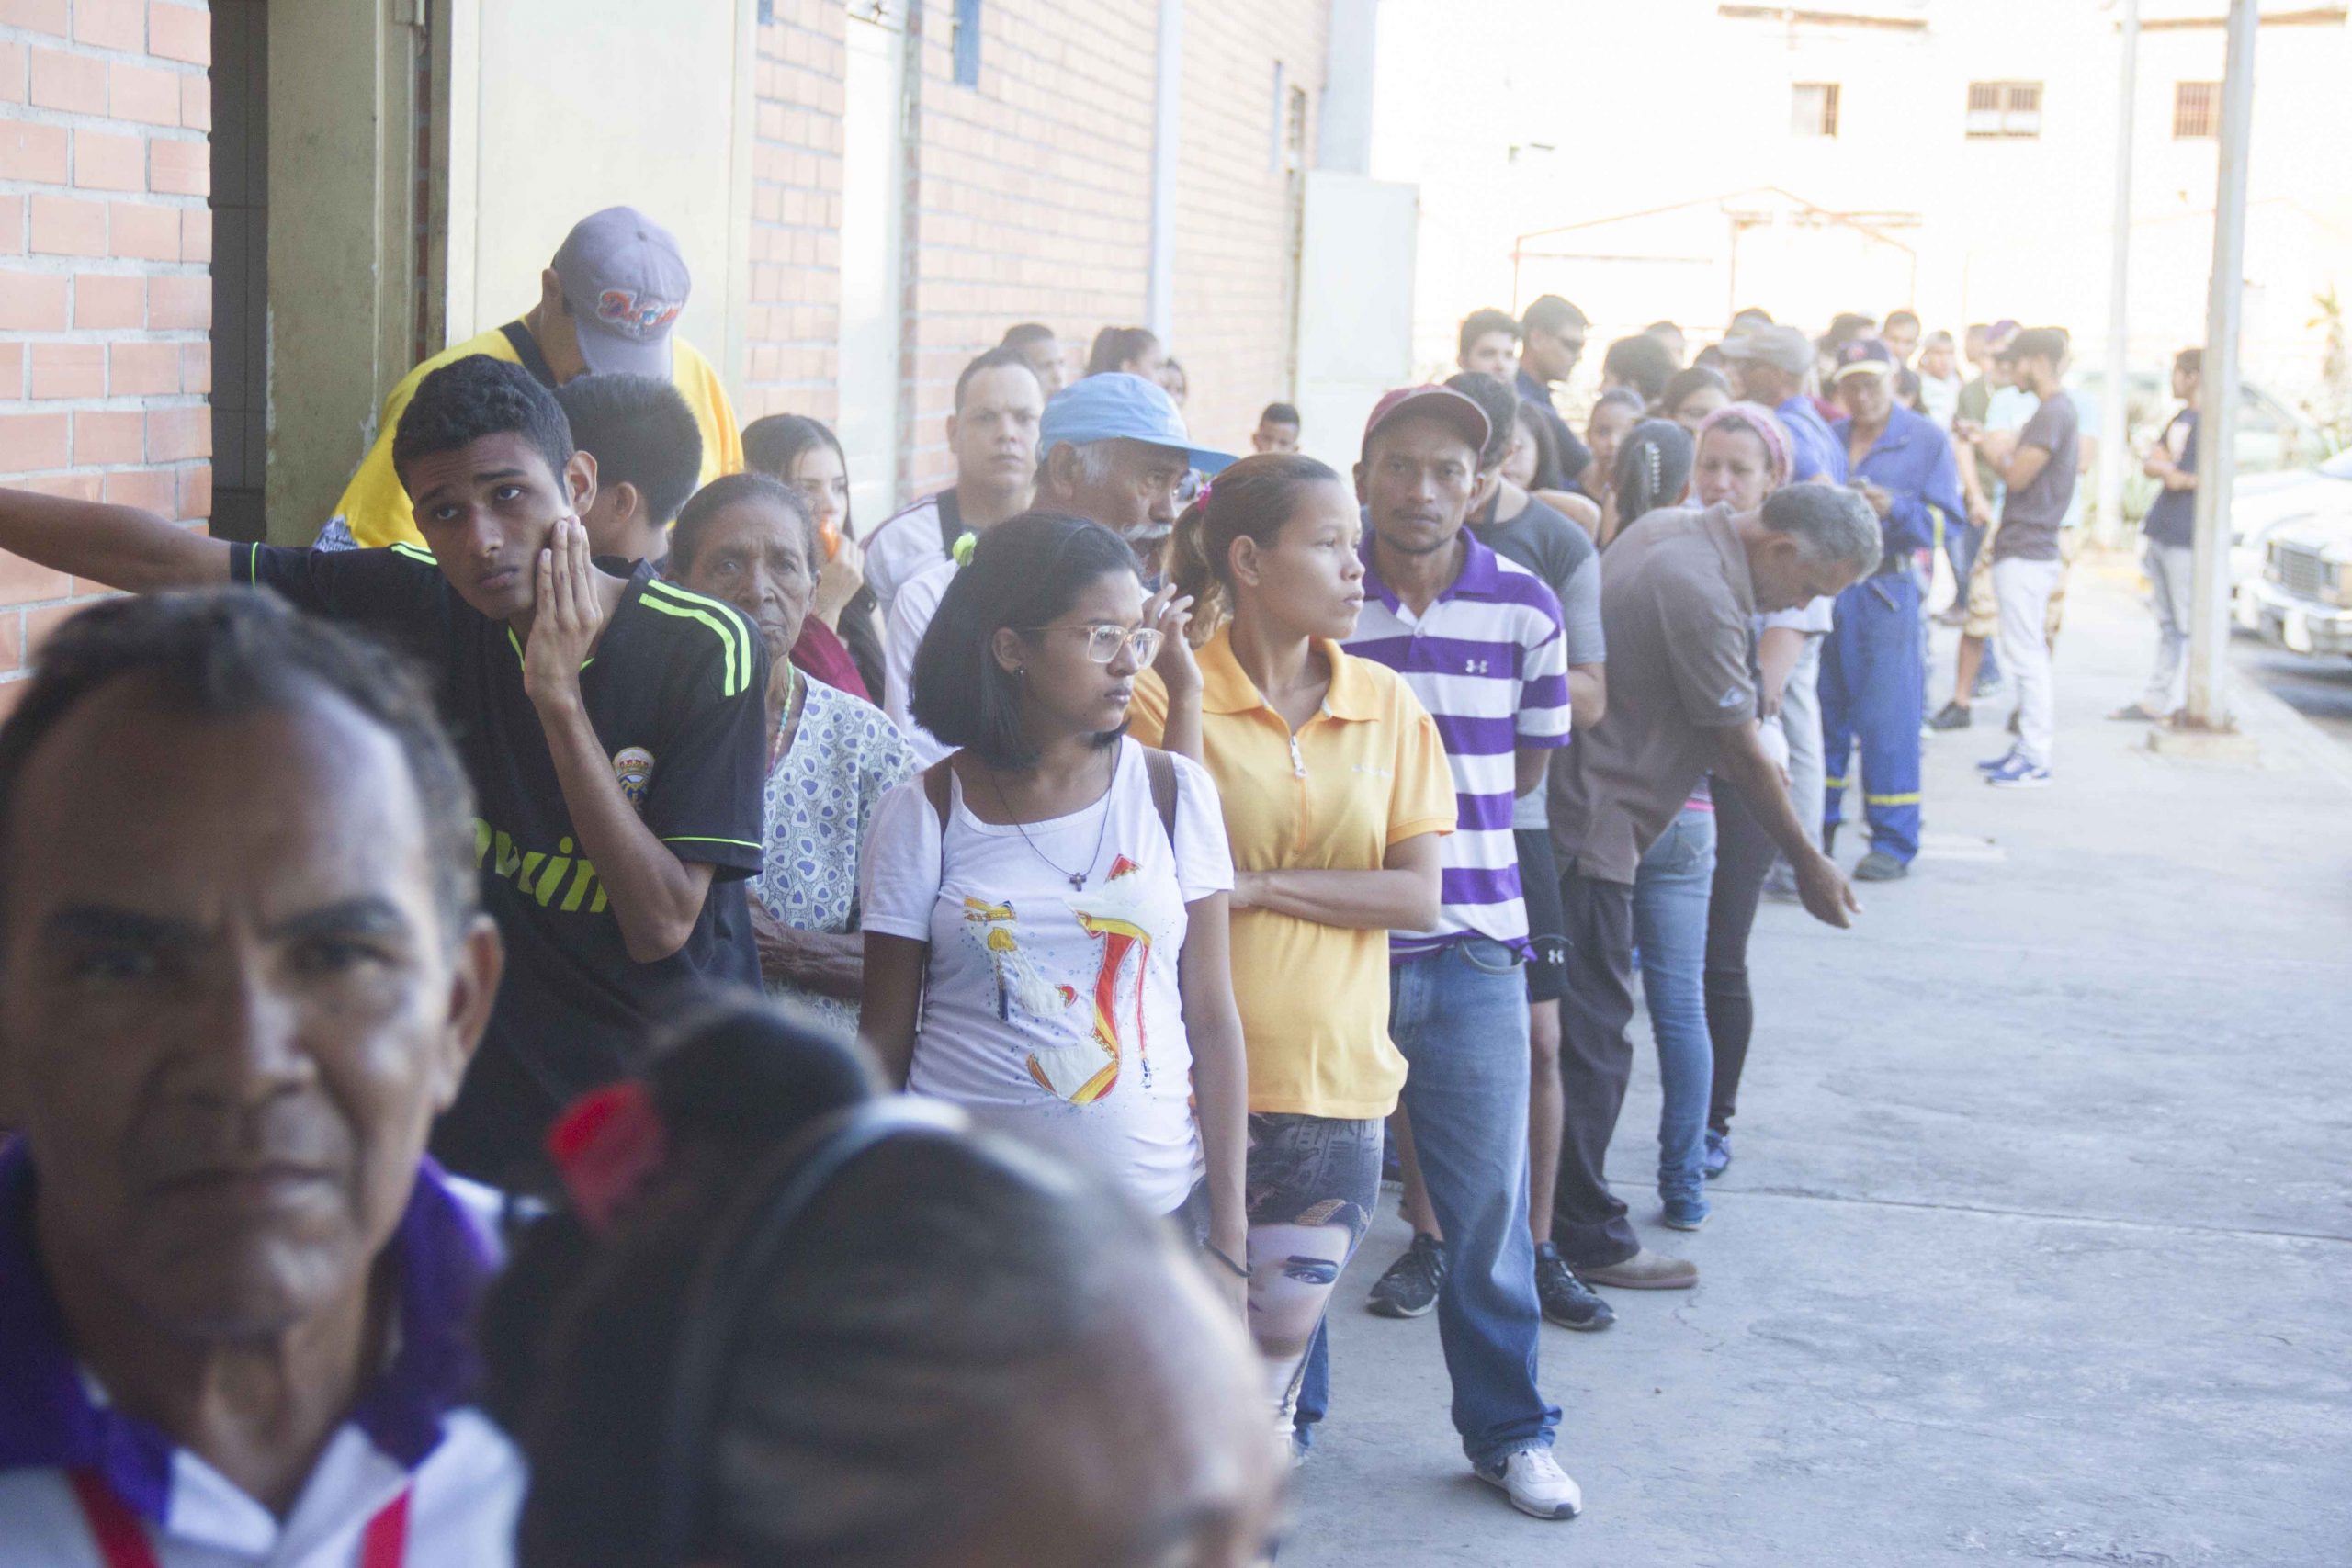  Puntos de Registro Electoral se abarrotaron este lunes en Carirubana